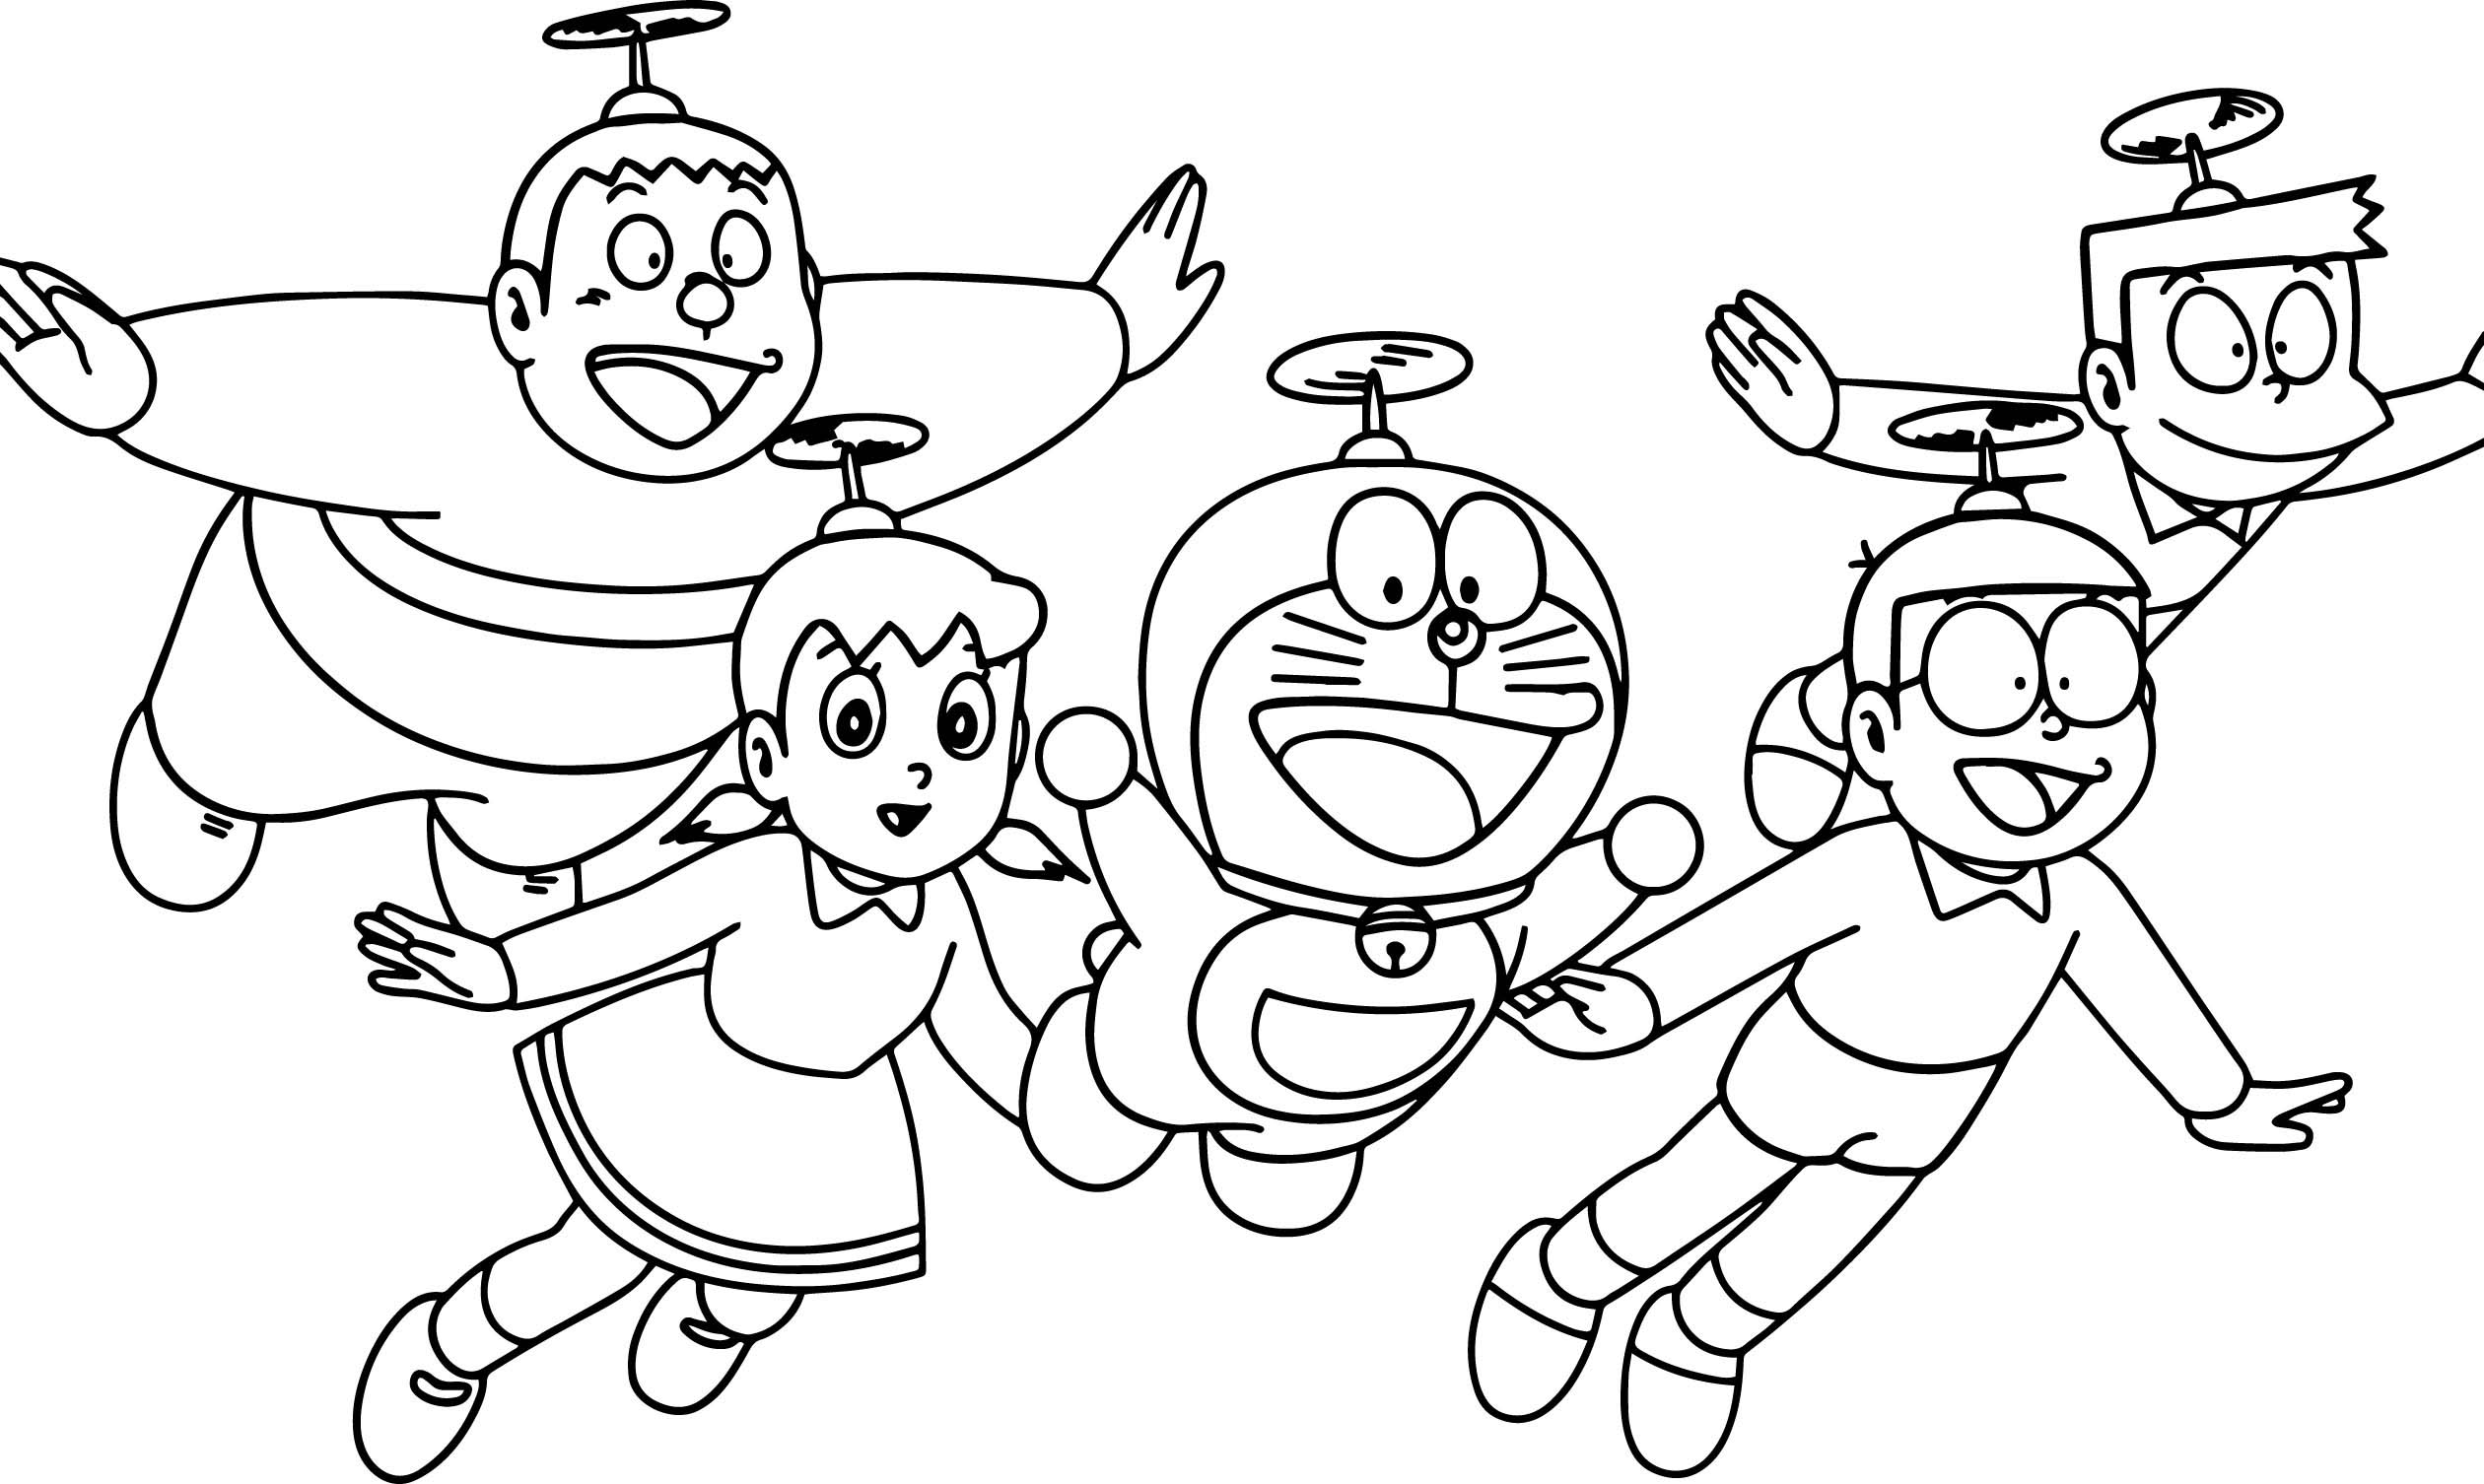 Tranh tô màu Nobita cùng những người bạn bay bằng chong chóng tre